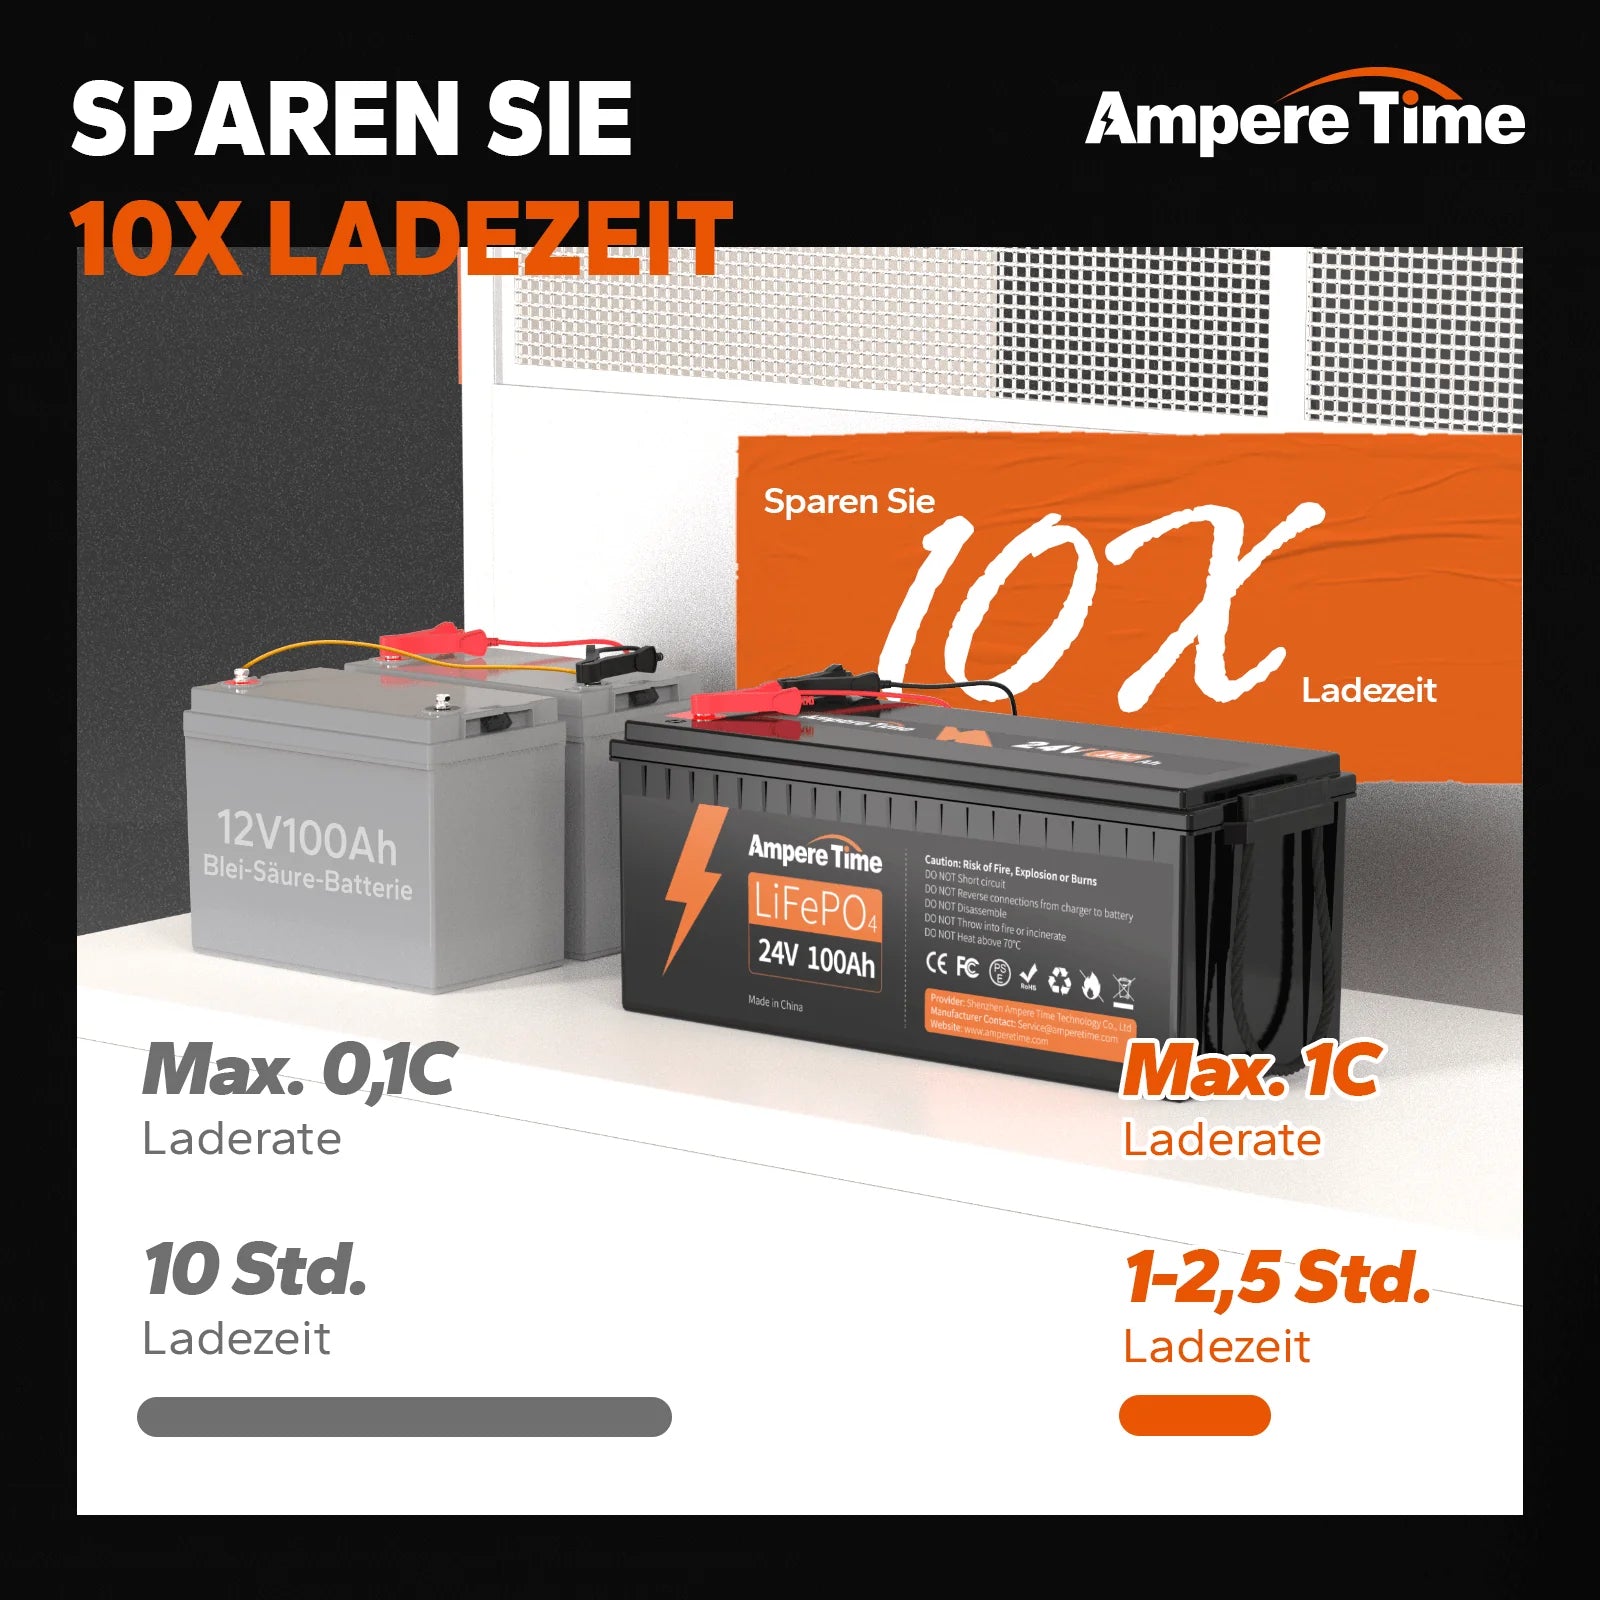 Ampere Time Batterie LiFePO4 24 V 100 Ah avec BMS 100 A, énergie maximale 2 560 Wh